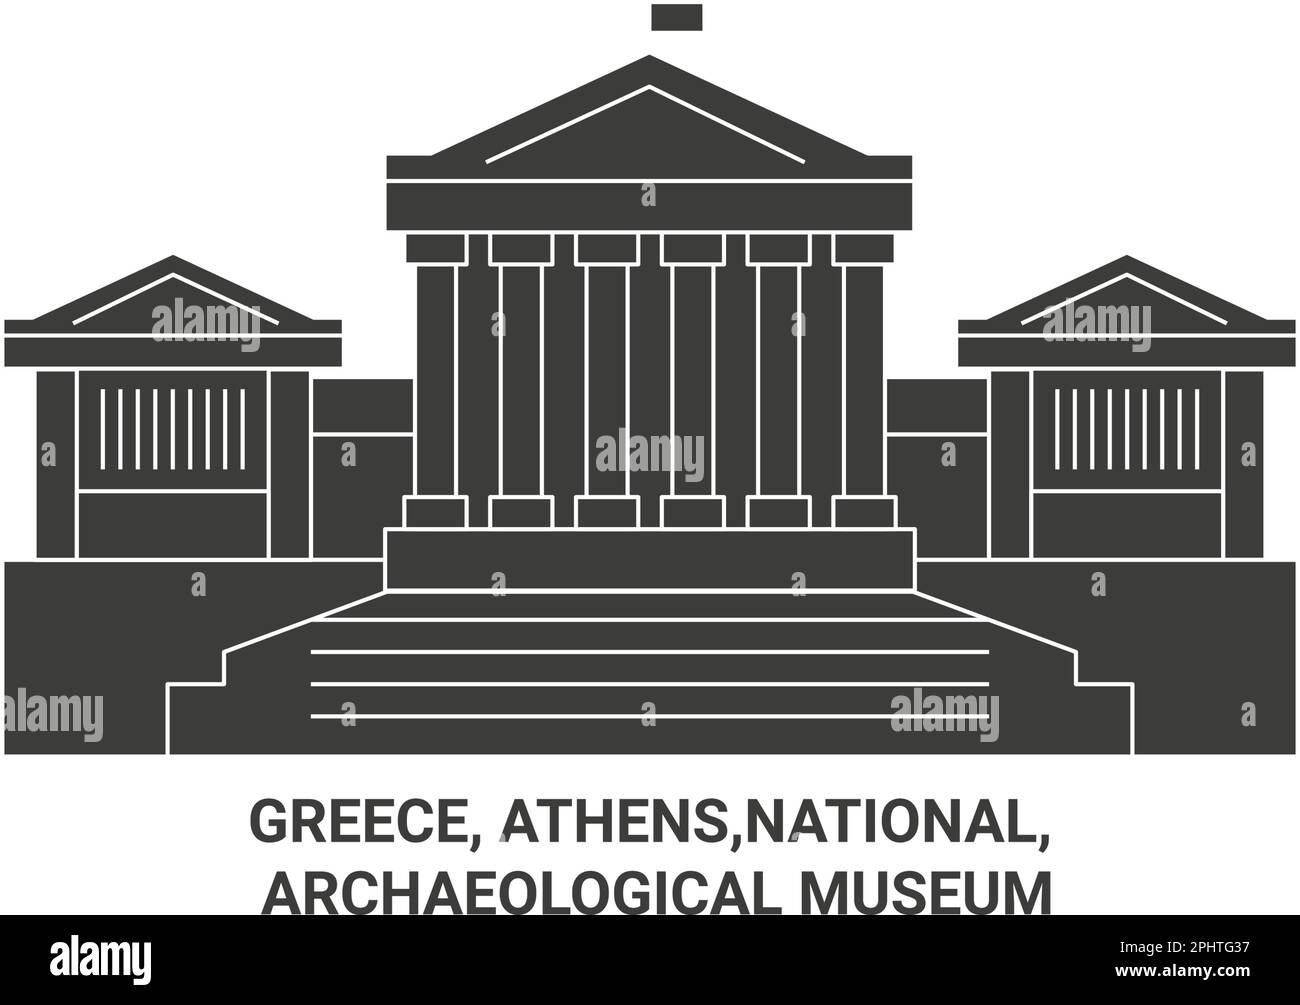 Griechenland, Athen, National, Archäologisches Museum Reise Wahrzeichen Vektordarstellung Stock Vektor